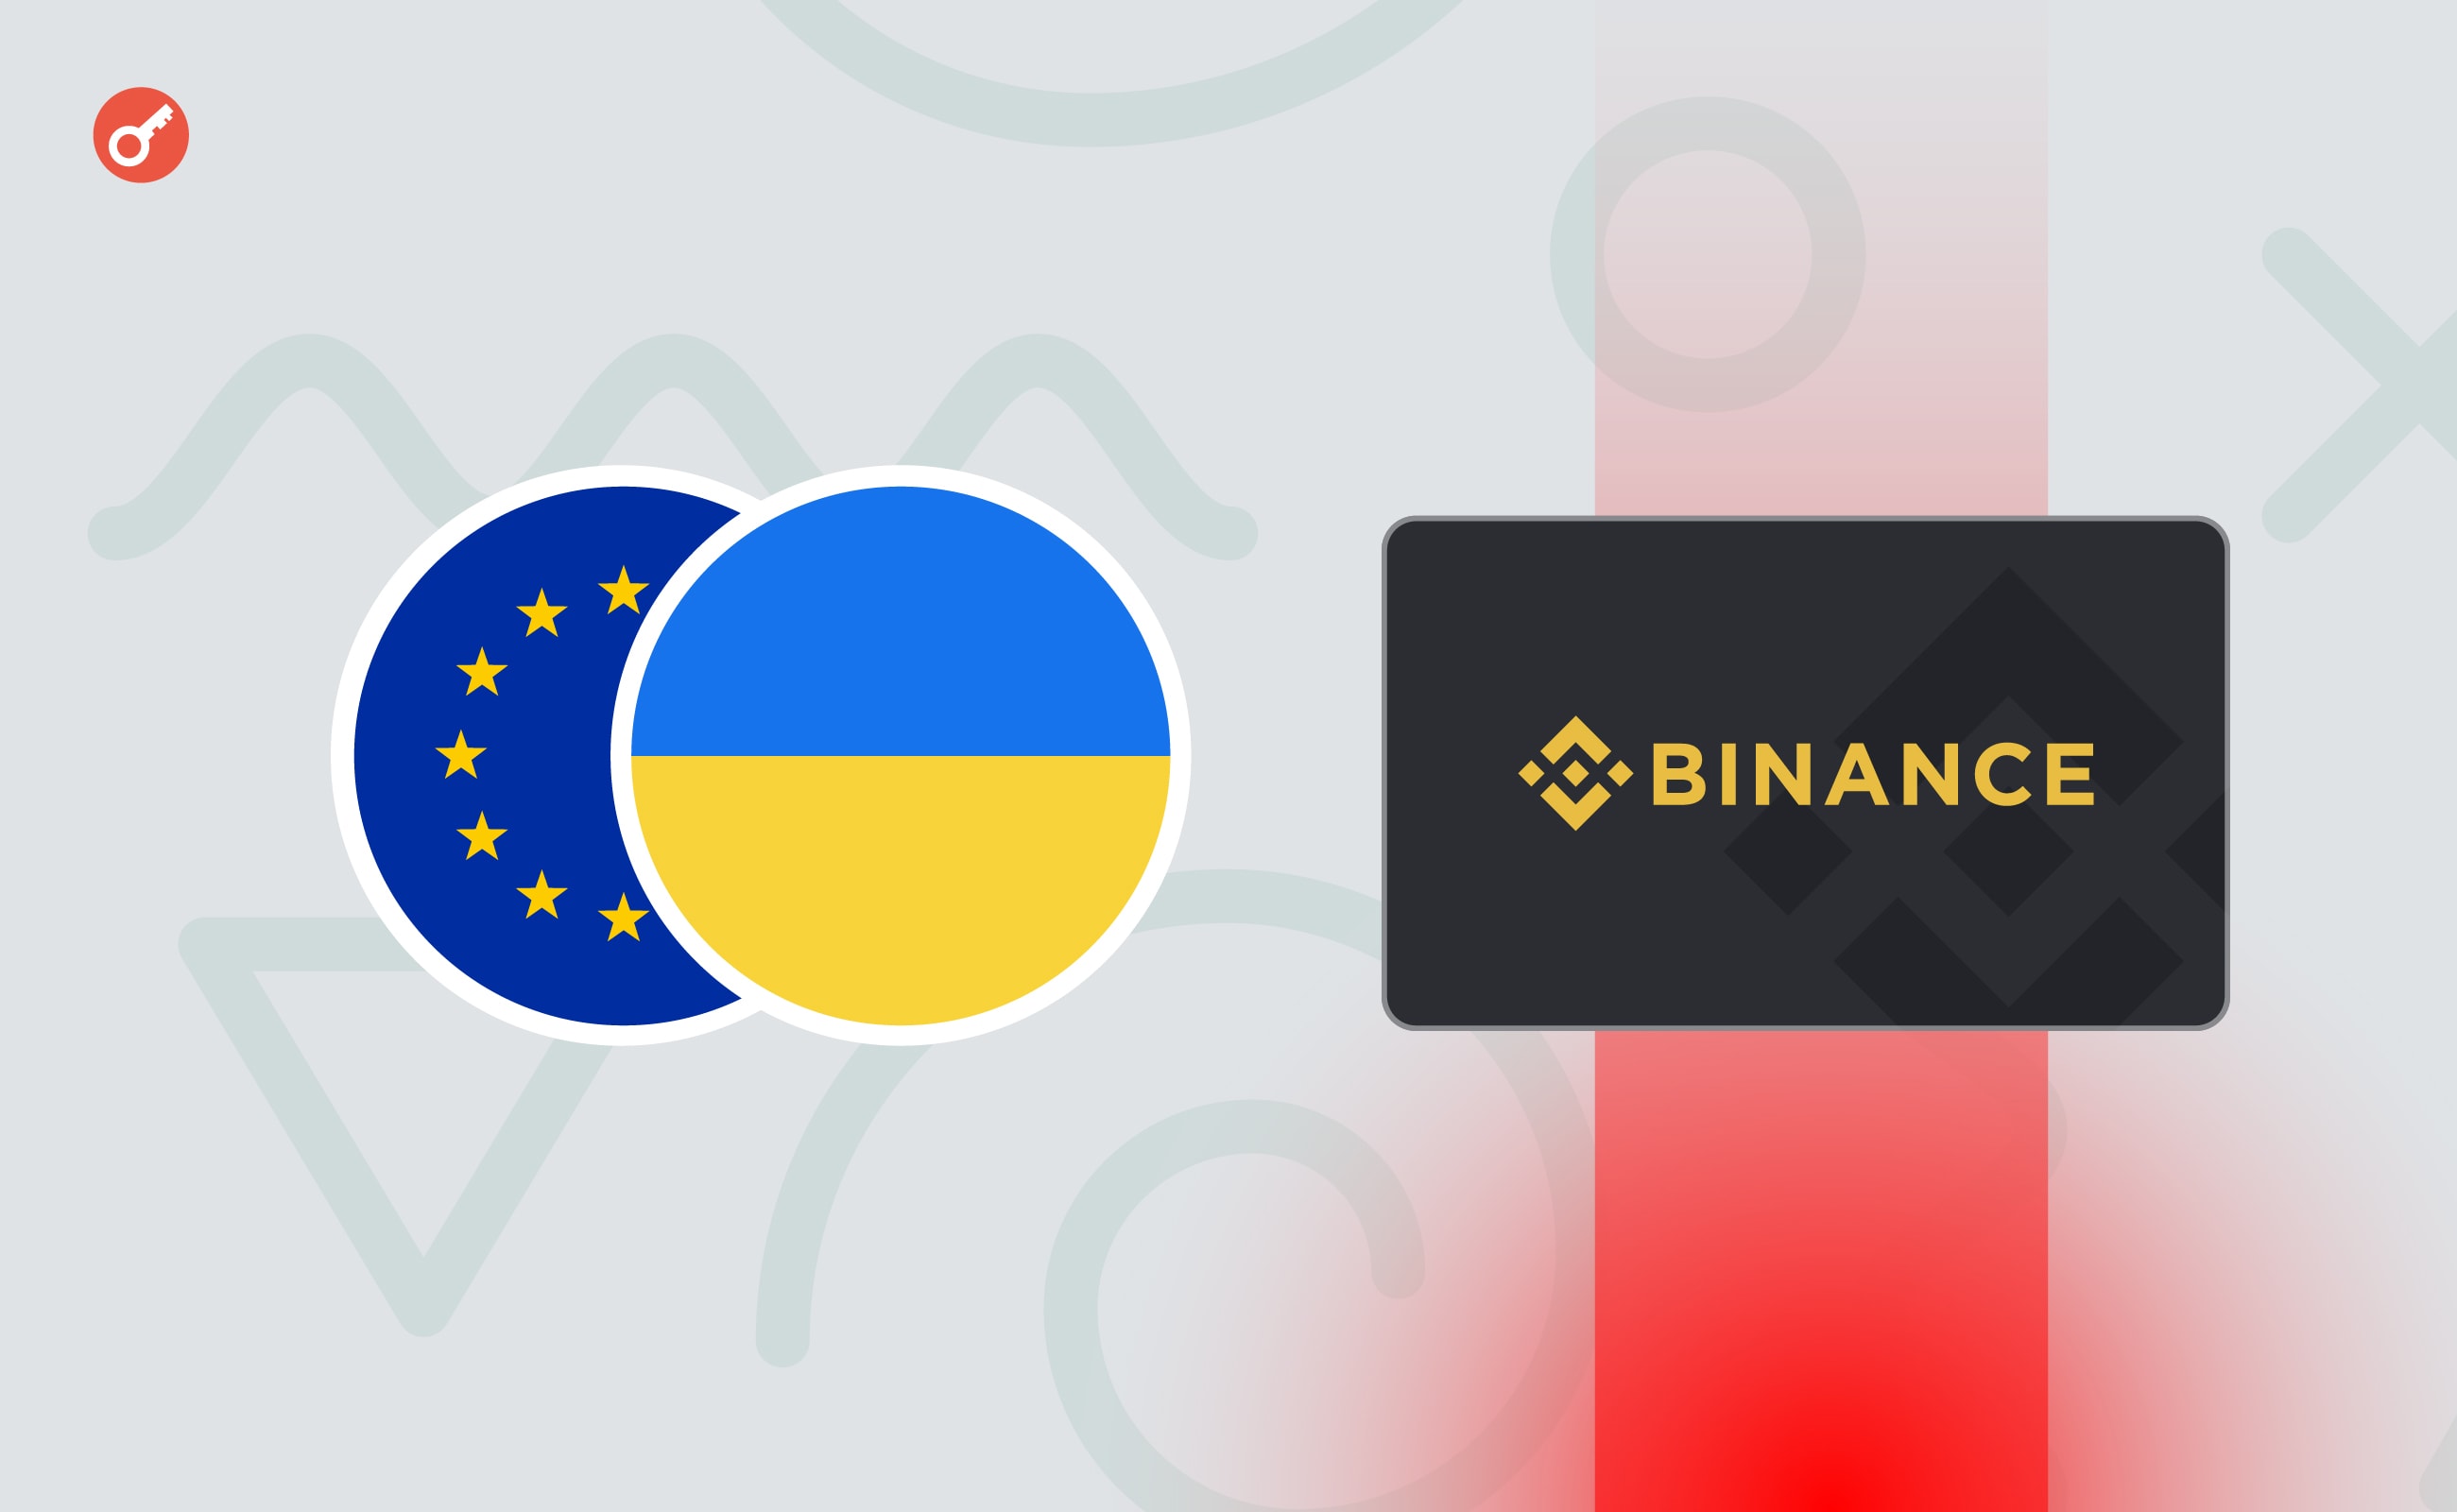 Binance Card перестала працювати в Україні та Європі. Розбираємося, що сталося і які є альтернативи. Головний колаж новини.